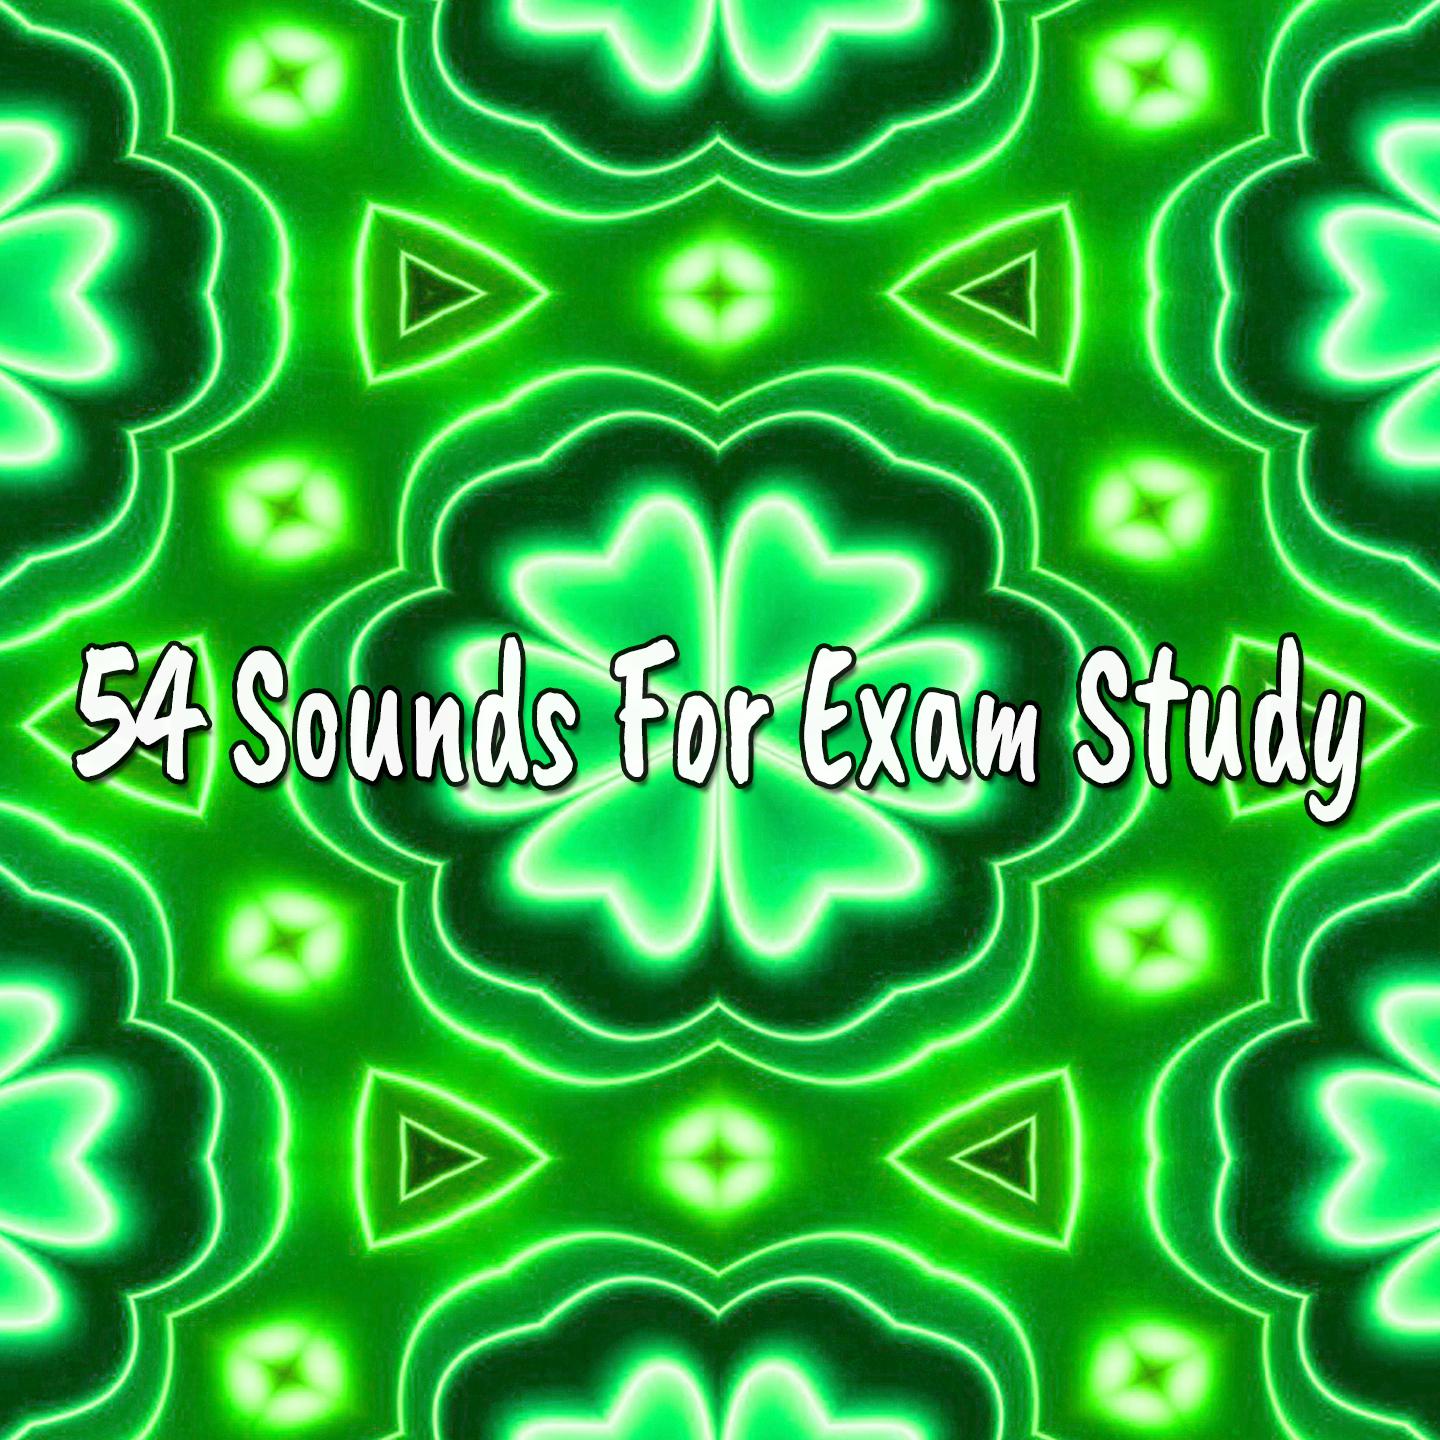 54 Sounds For Exam Study